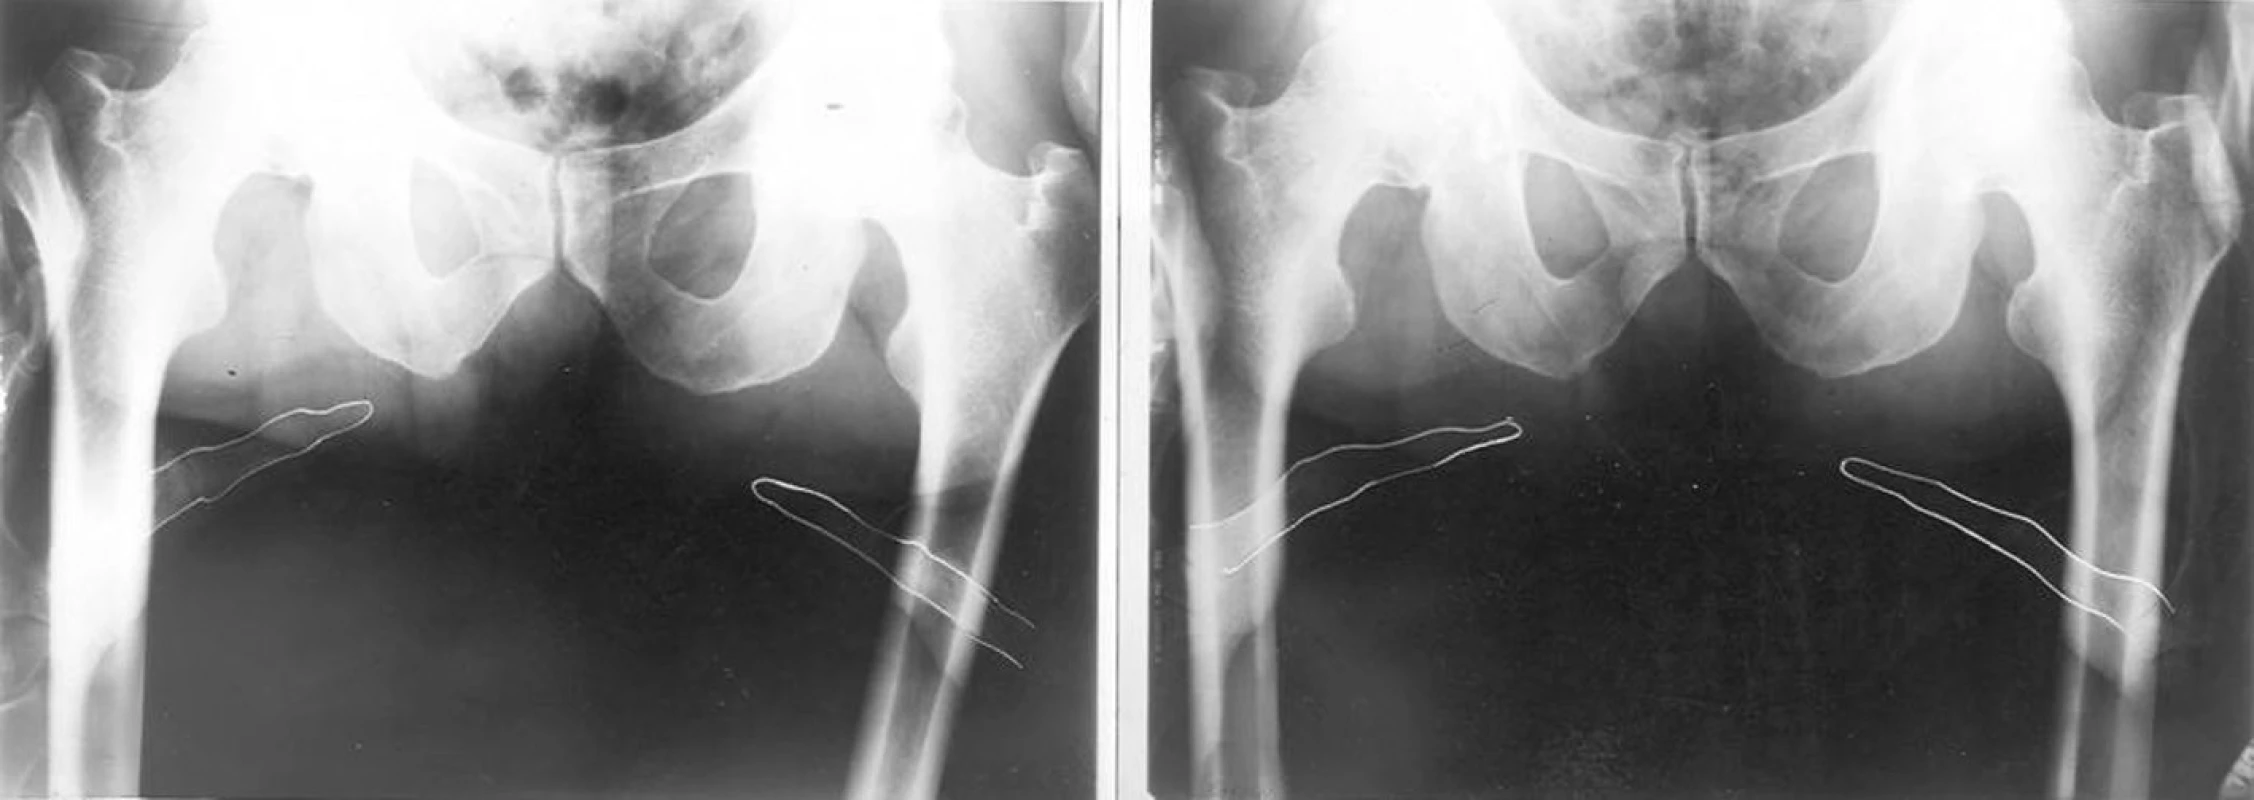 Palpační iluze: před a po terapii se postavení hrbolů sedacích kostí nezměnilo. Změnou napětí měkkých tkání se však změnilo postavení palpujících palců.